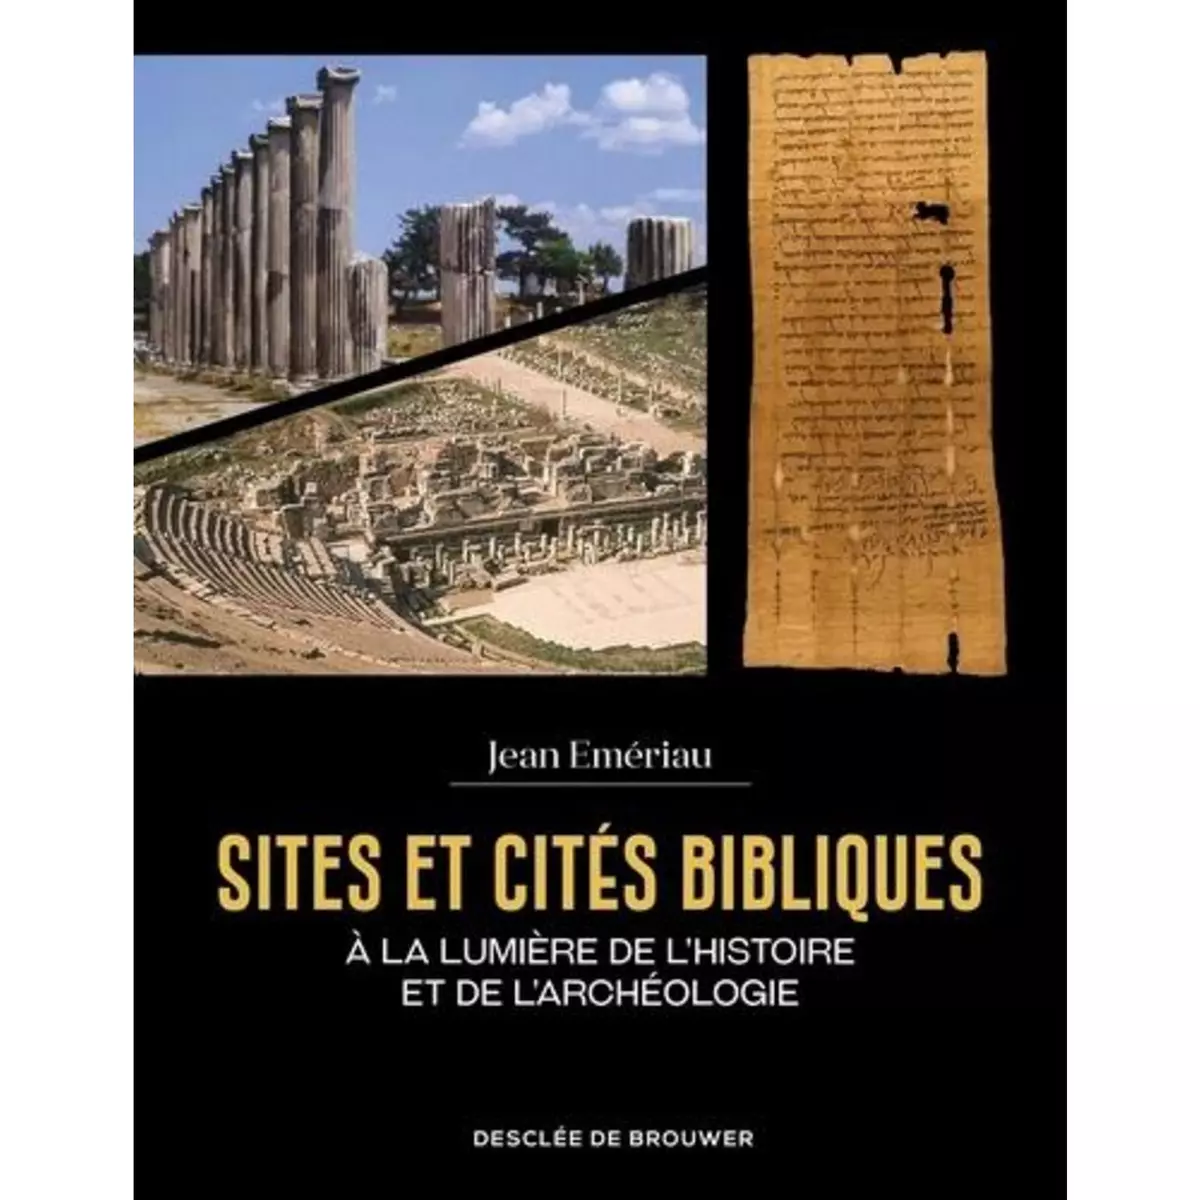  SITES ET CITES BIBLIQUES. A LA LUMIERE DE L'HISTOIRE ET DE L'ARCHEOLOGIE, Emériau Jean